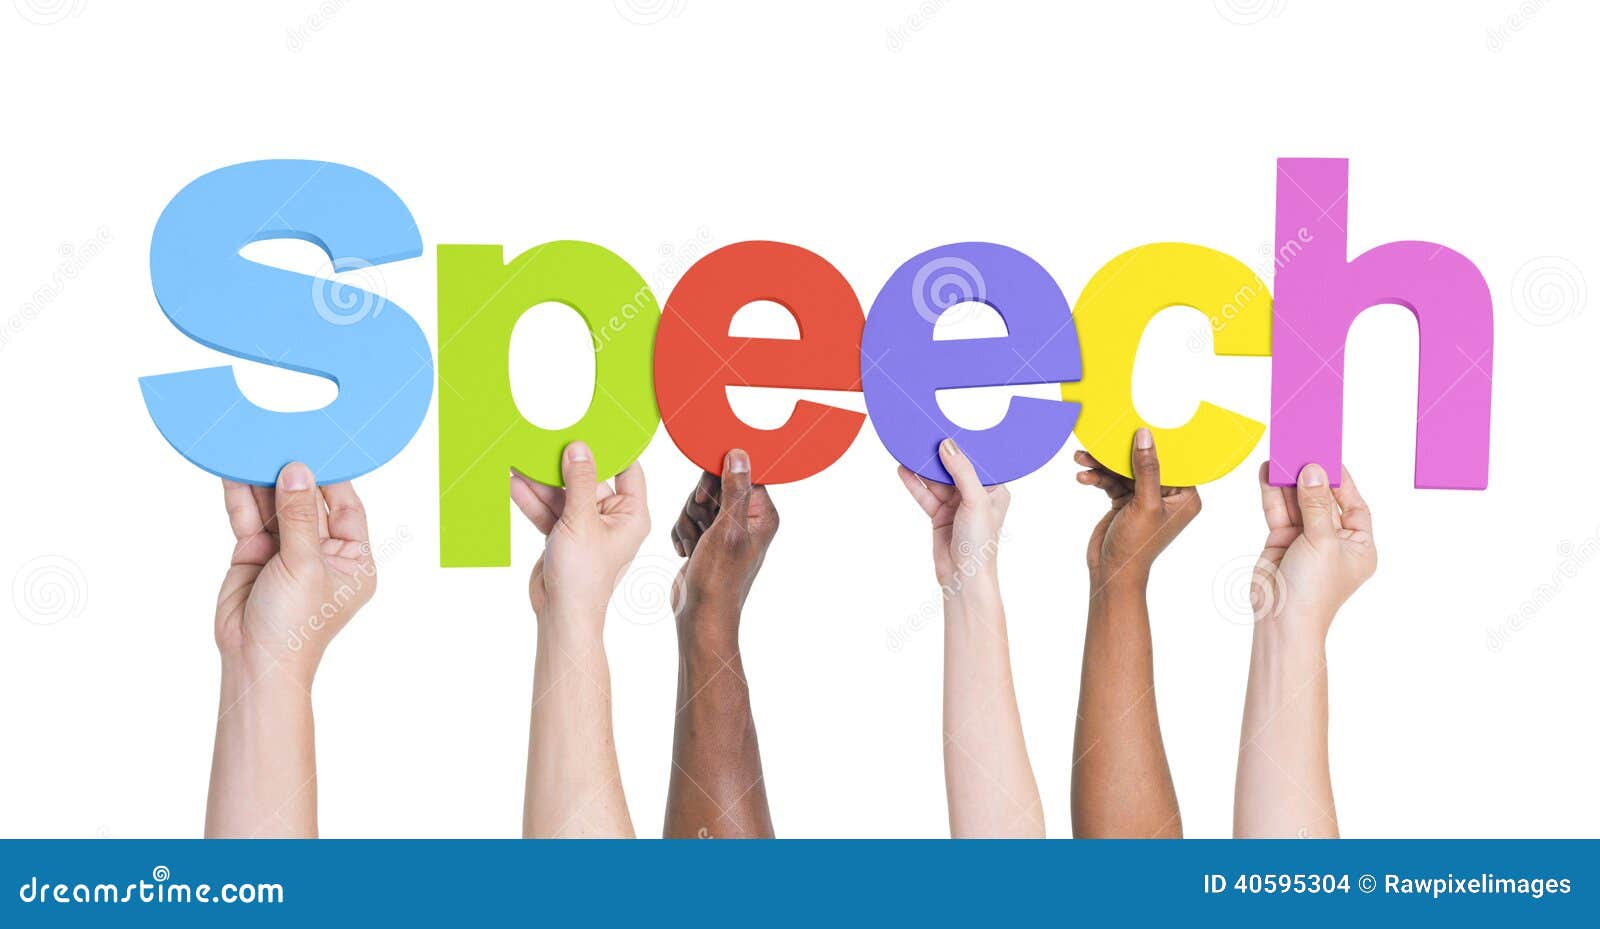 speech word